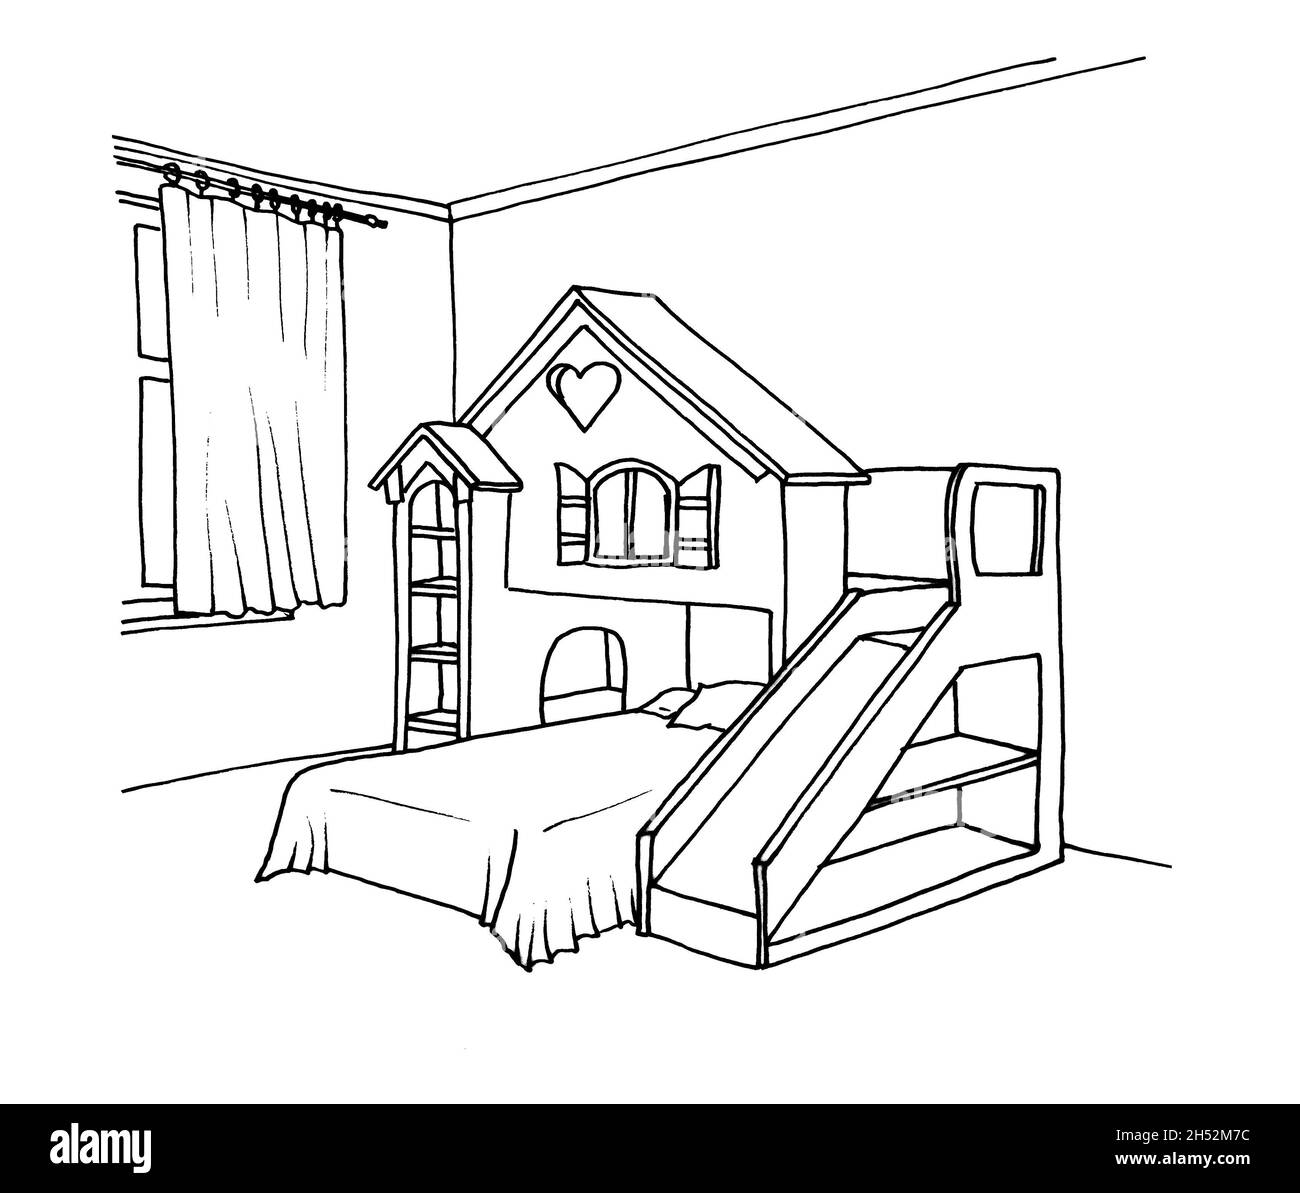 Disegno grafico di una stanza interna per bambini con una casa da gioco Foto Stock